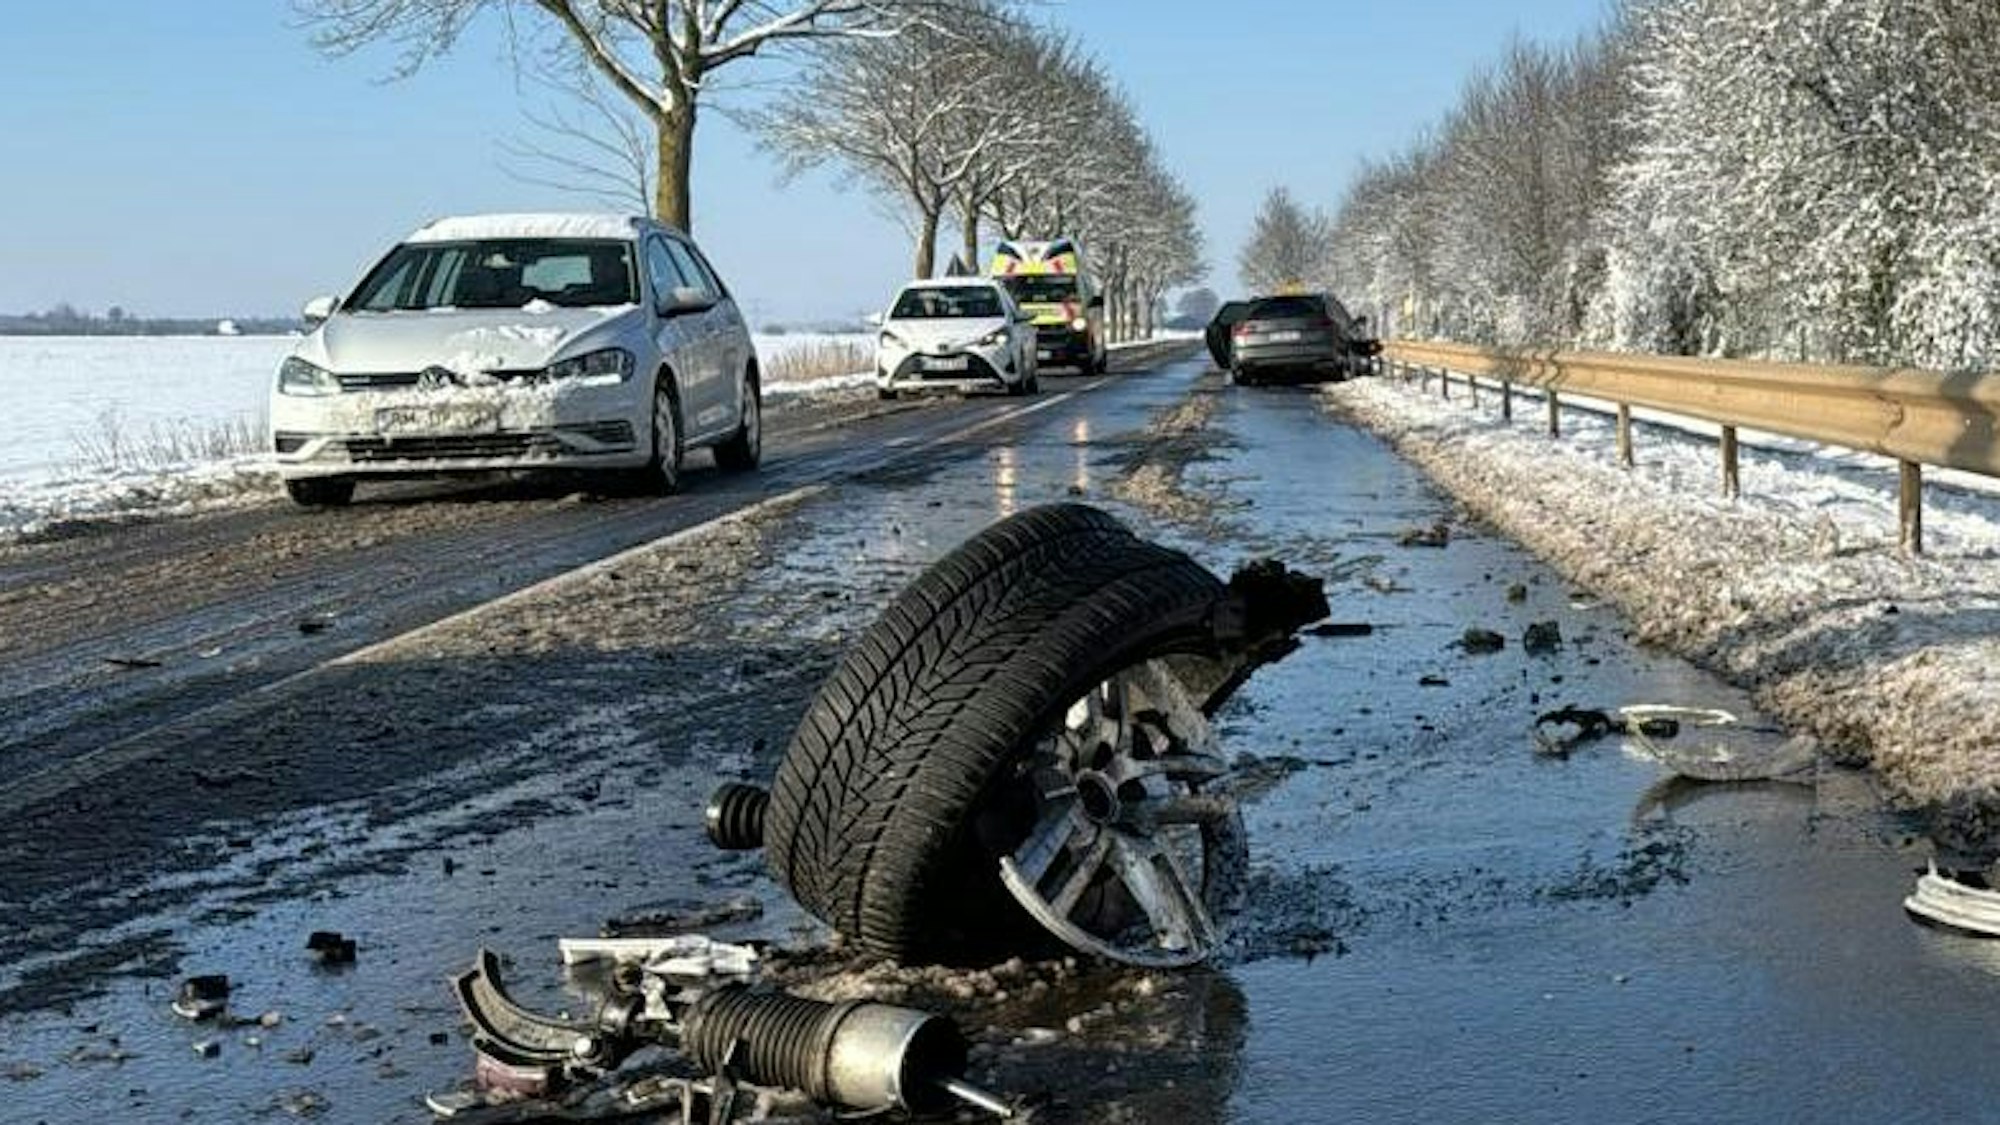 Das Bild zeigt eine verschneite Straße und ein abgerissenes Wagenrad eines Autos auf der Fahrbahn.